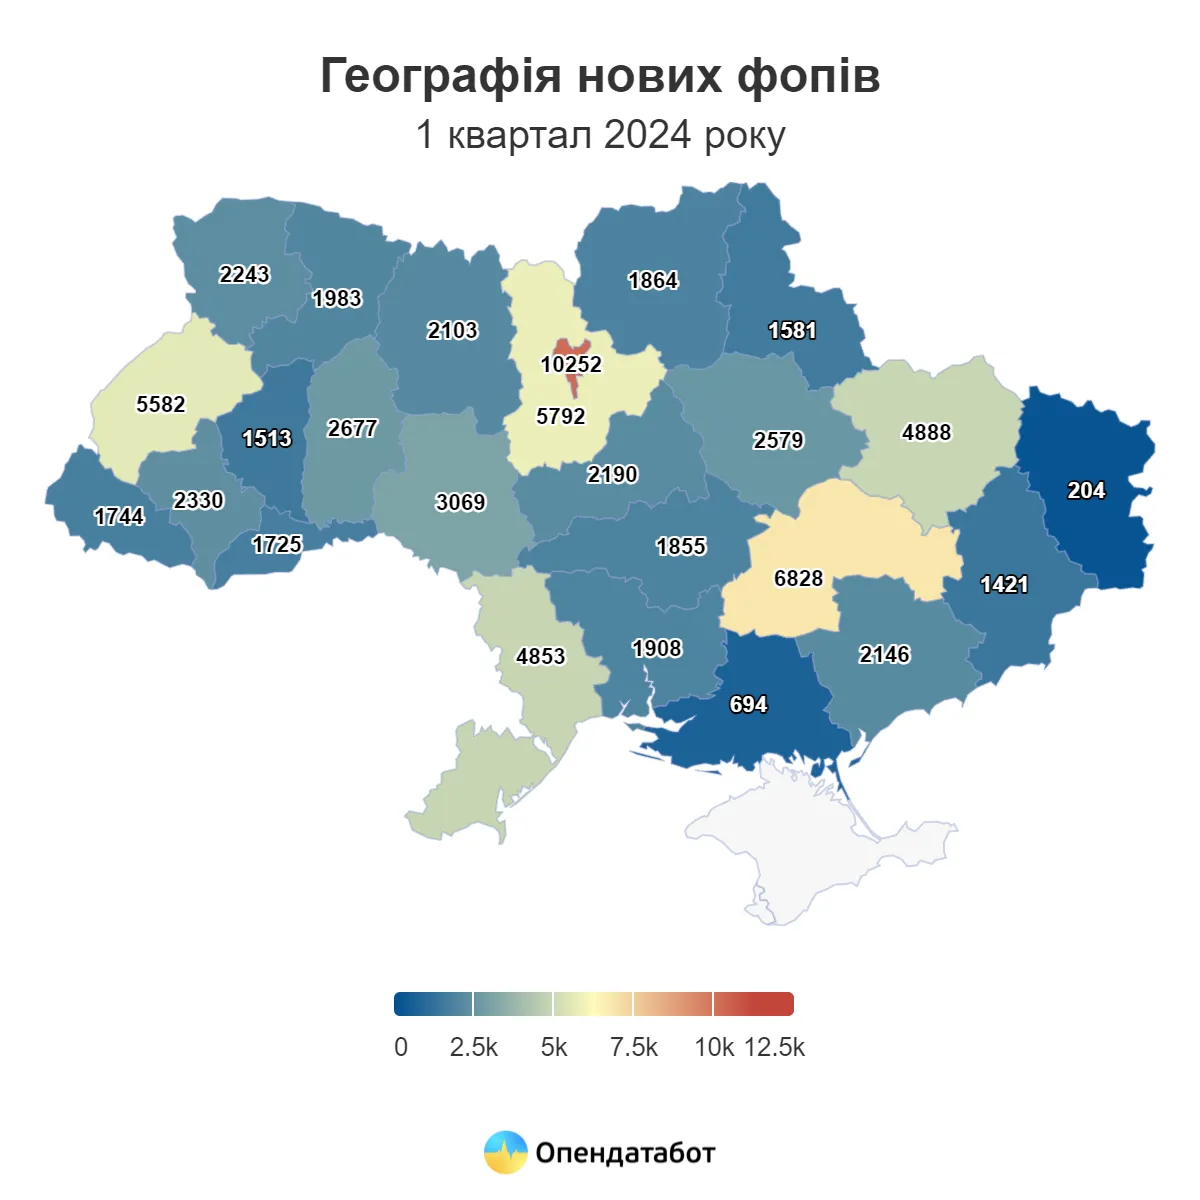 Де найбільше ФОП в Україні